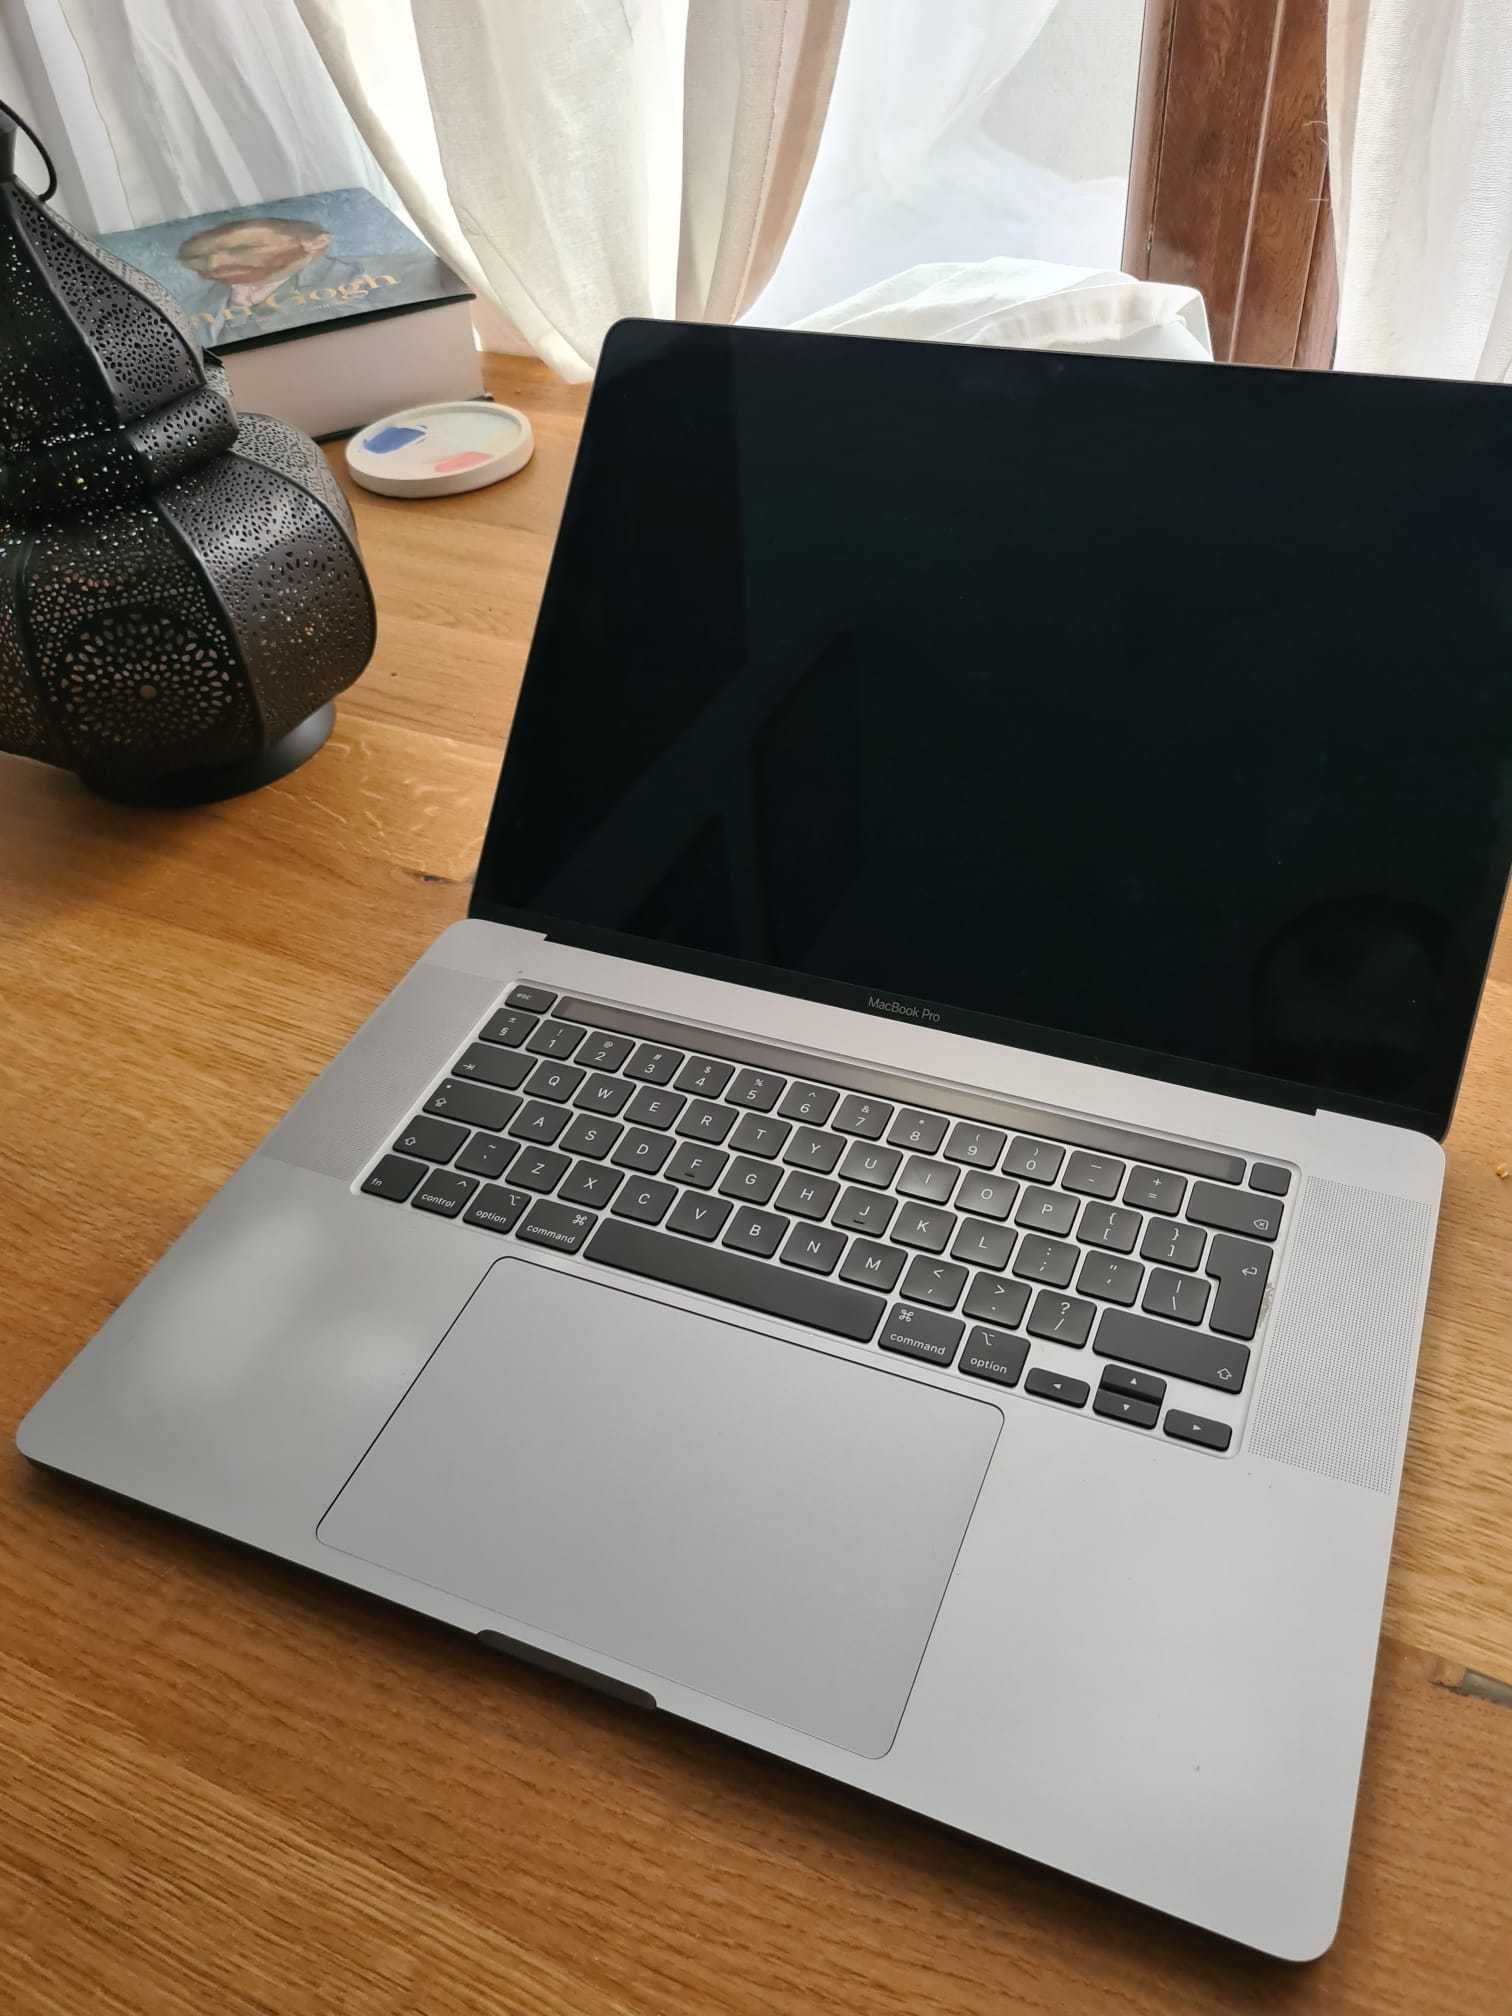 Macbook Pro 16 inch 2019 - 16 gb ram - i7 2.6ghz